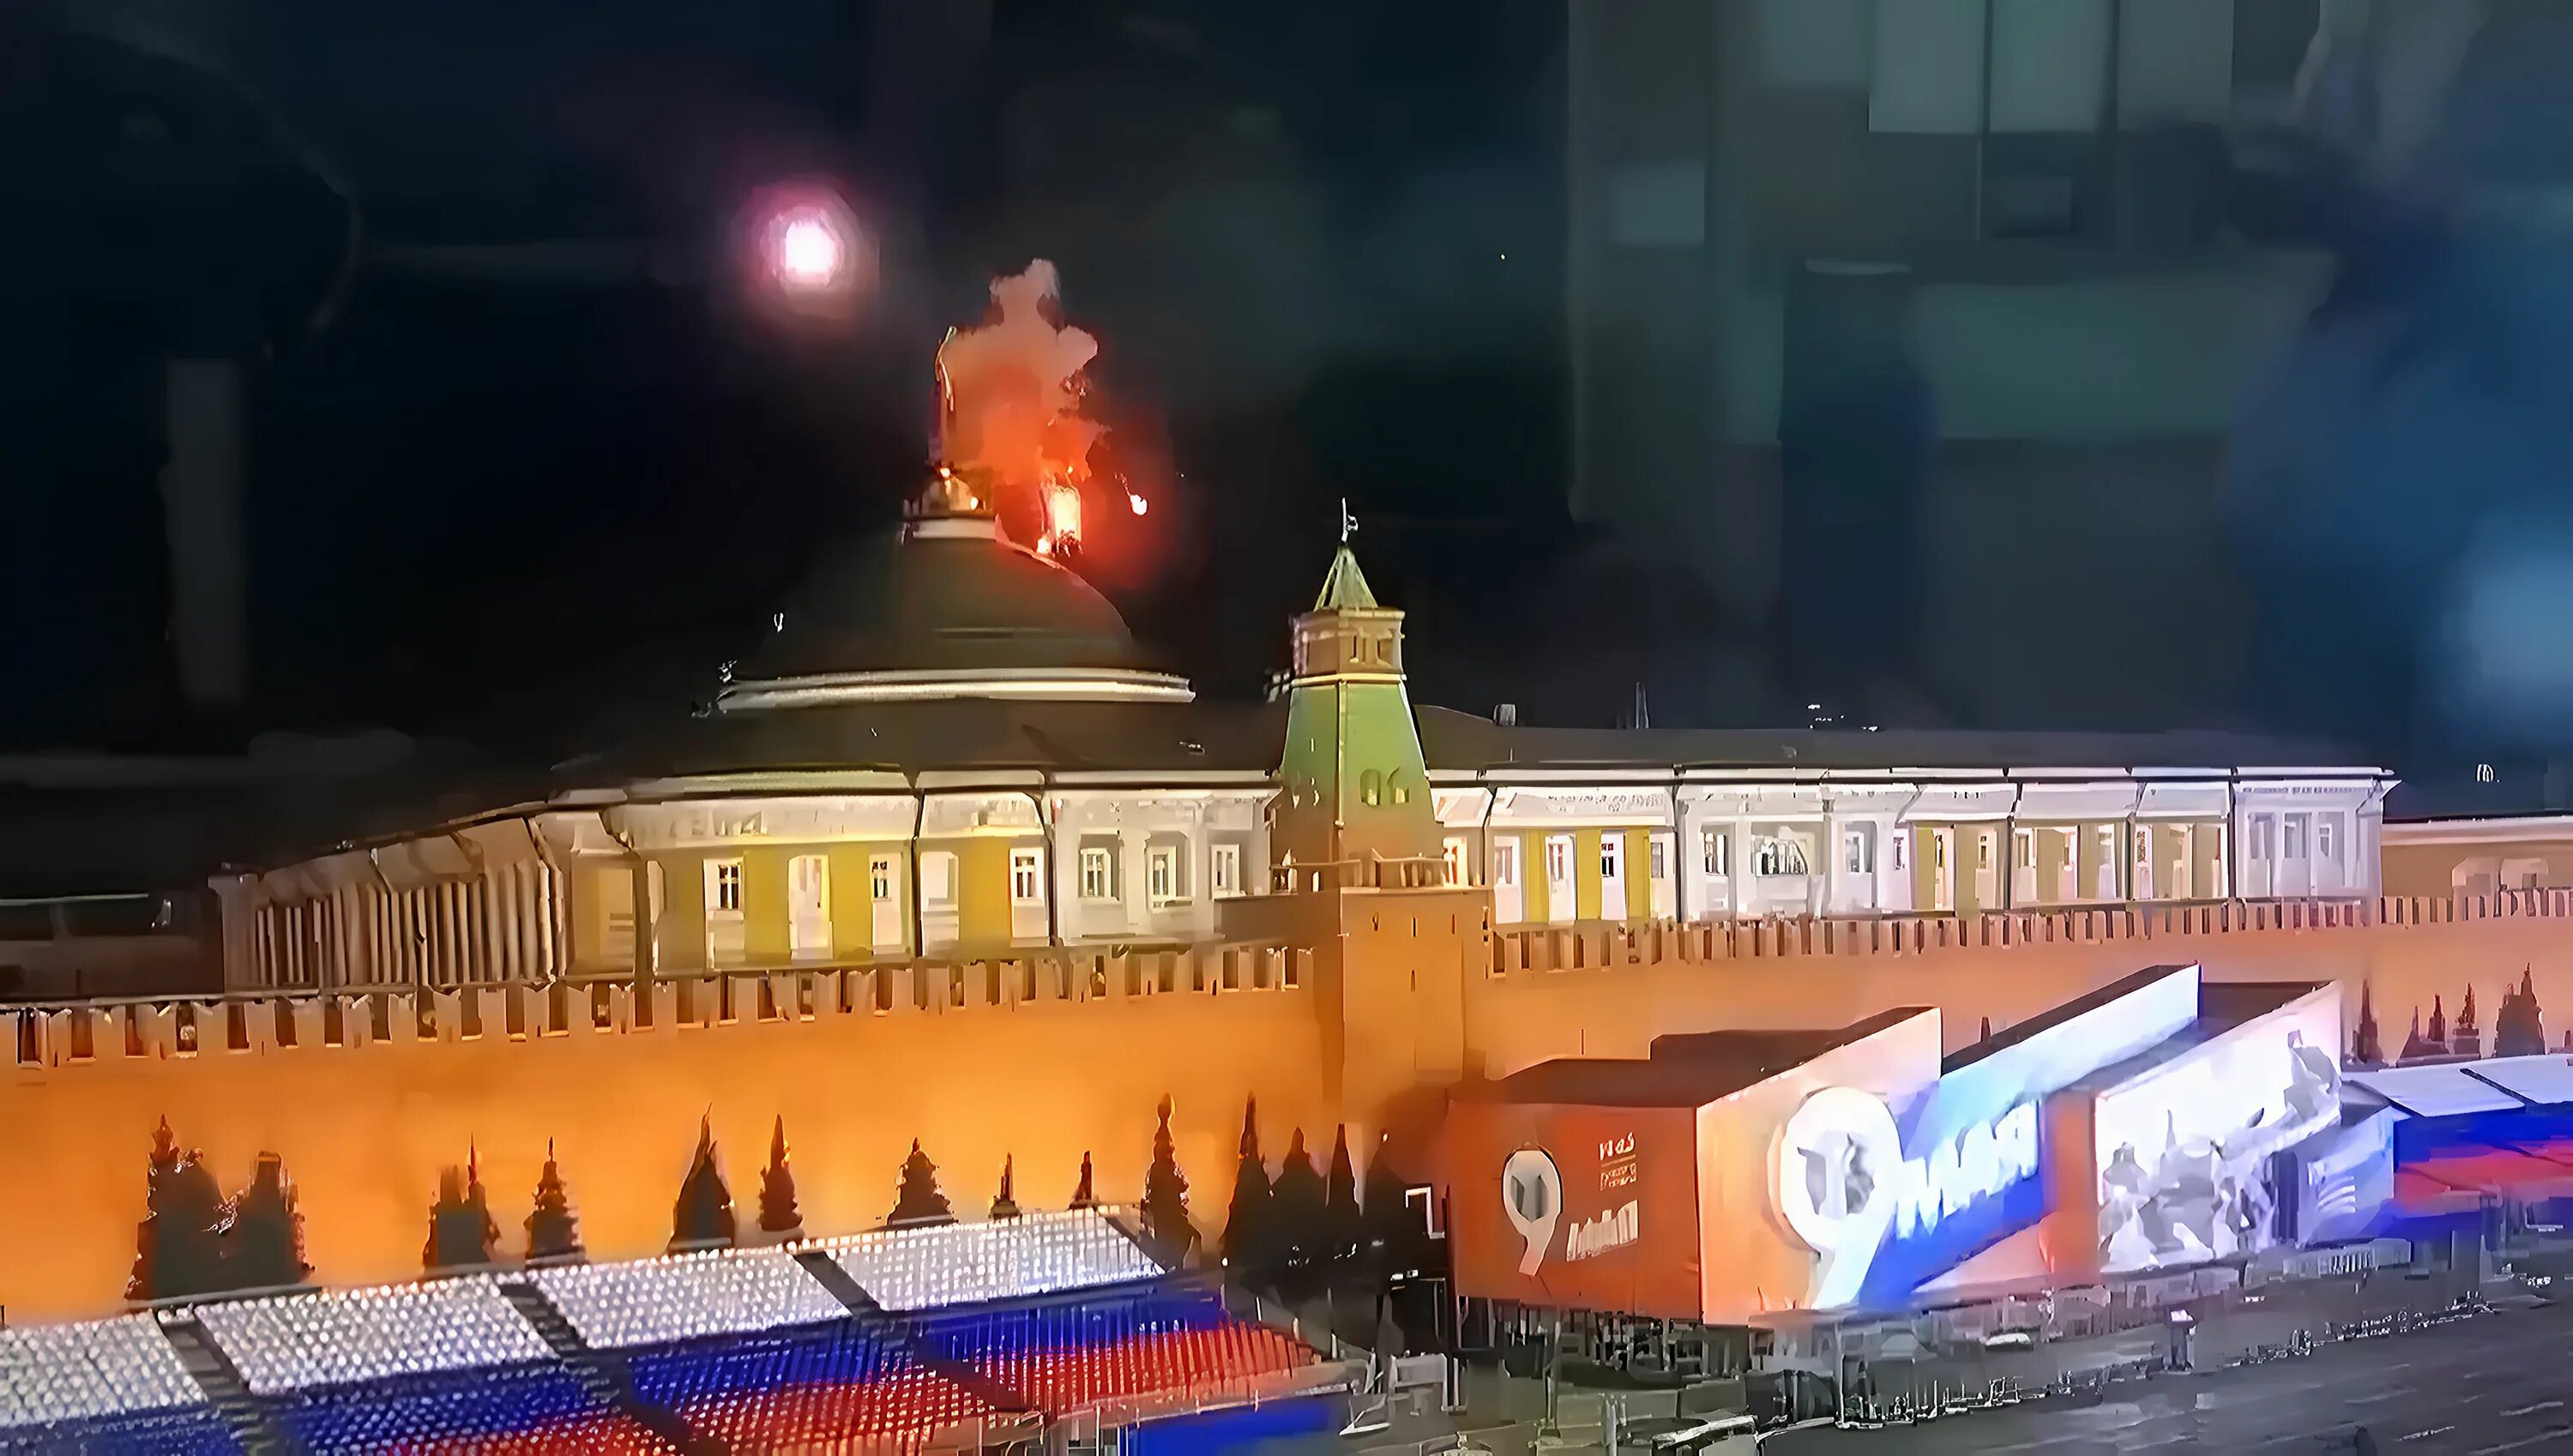 3 мая 2020 г. Сенатский дворец Московского Кремля пожар. Кремль горит. Кремль сейчас. Резиденция президента в Кремле.